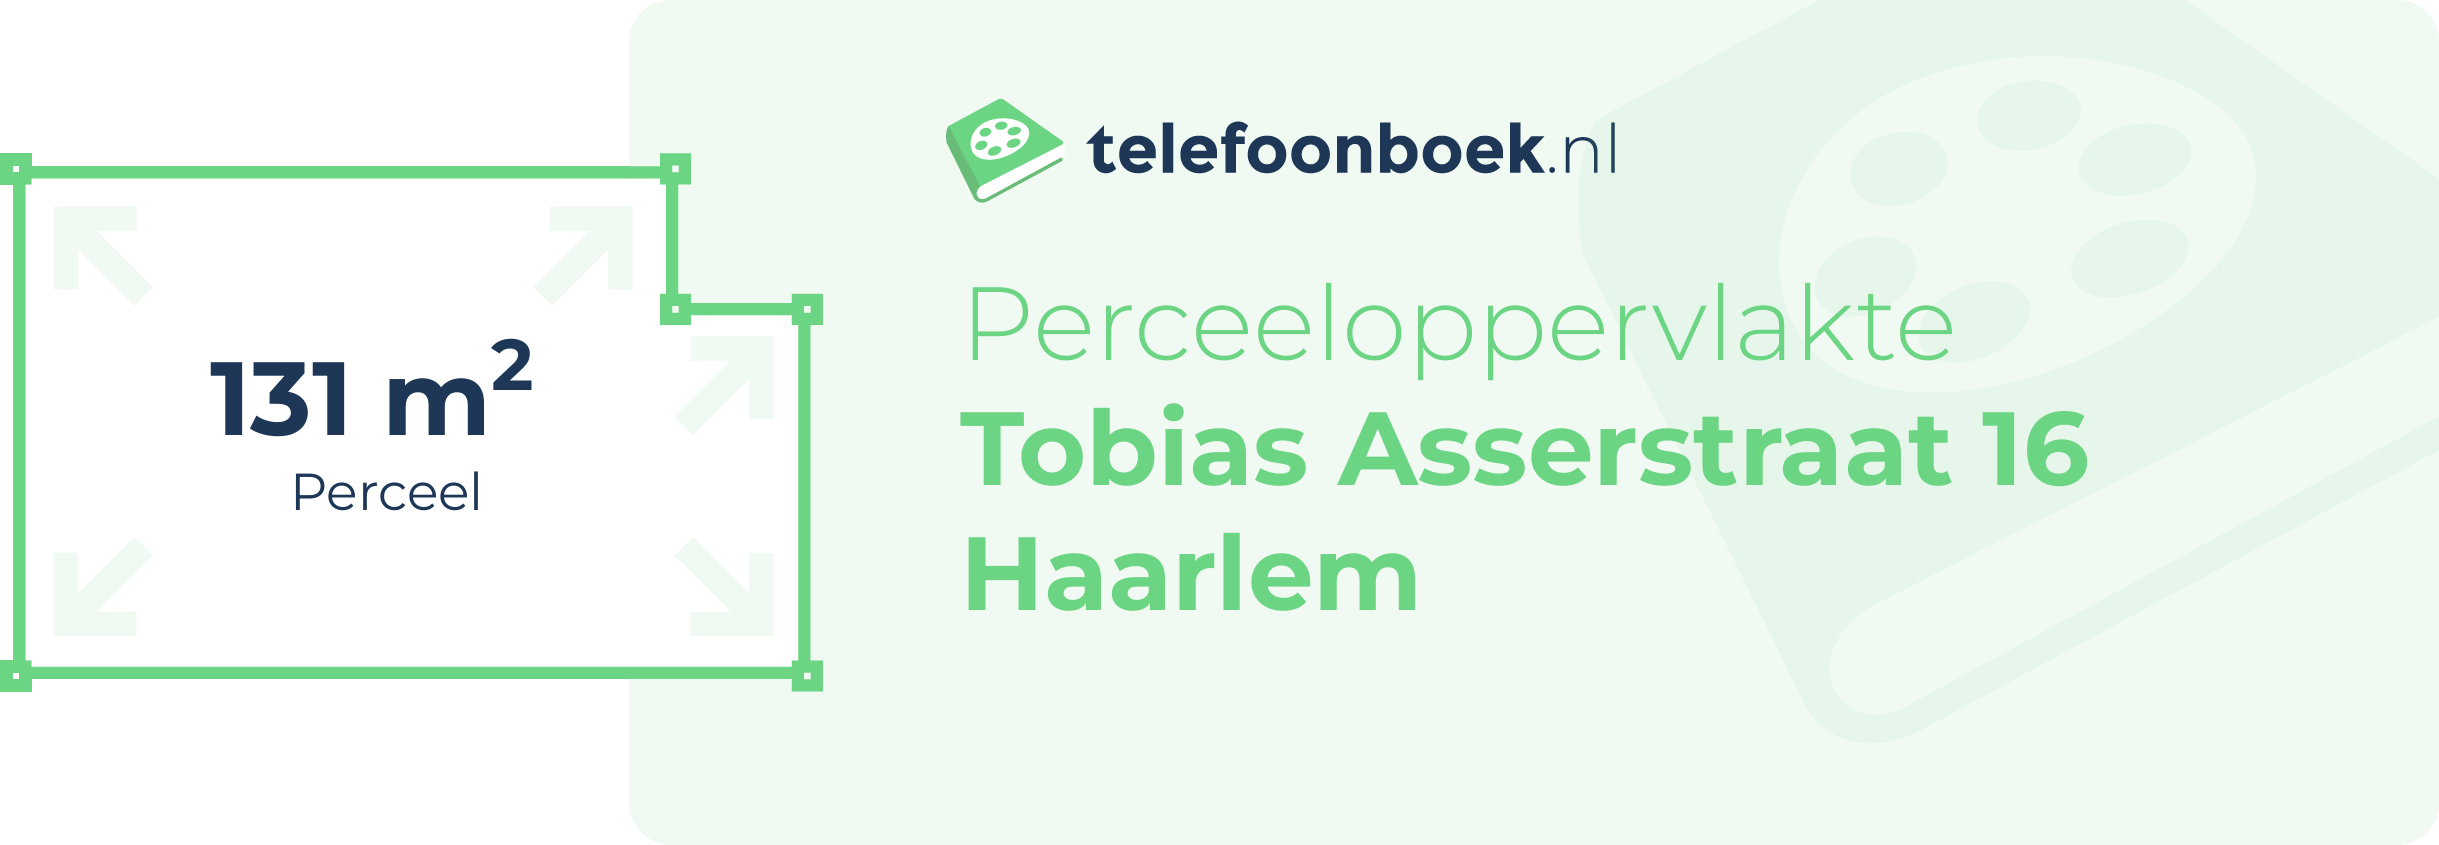 Perceeloppervlakte Tobias Asserstraat 16 Haarlem